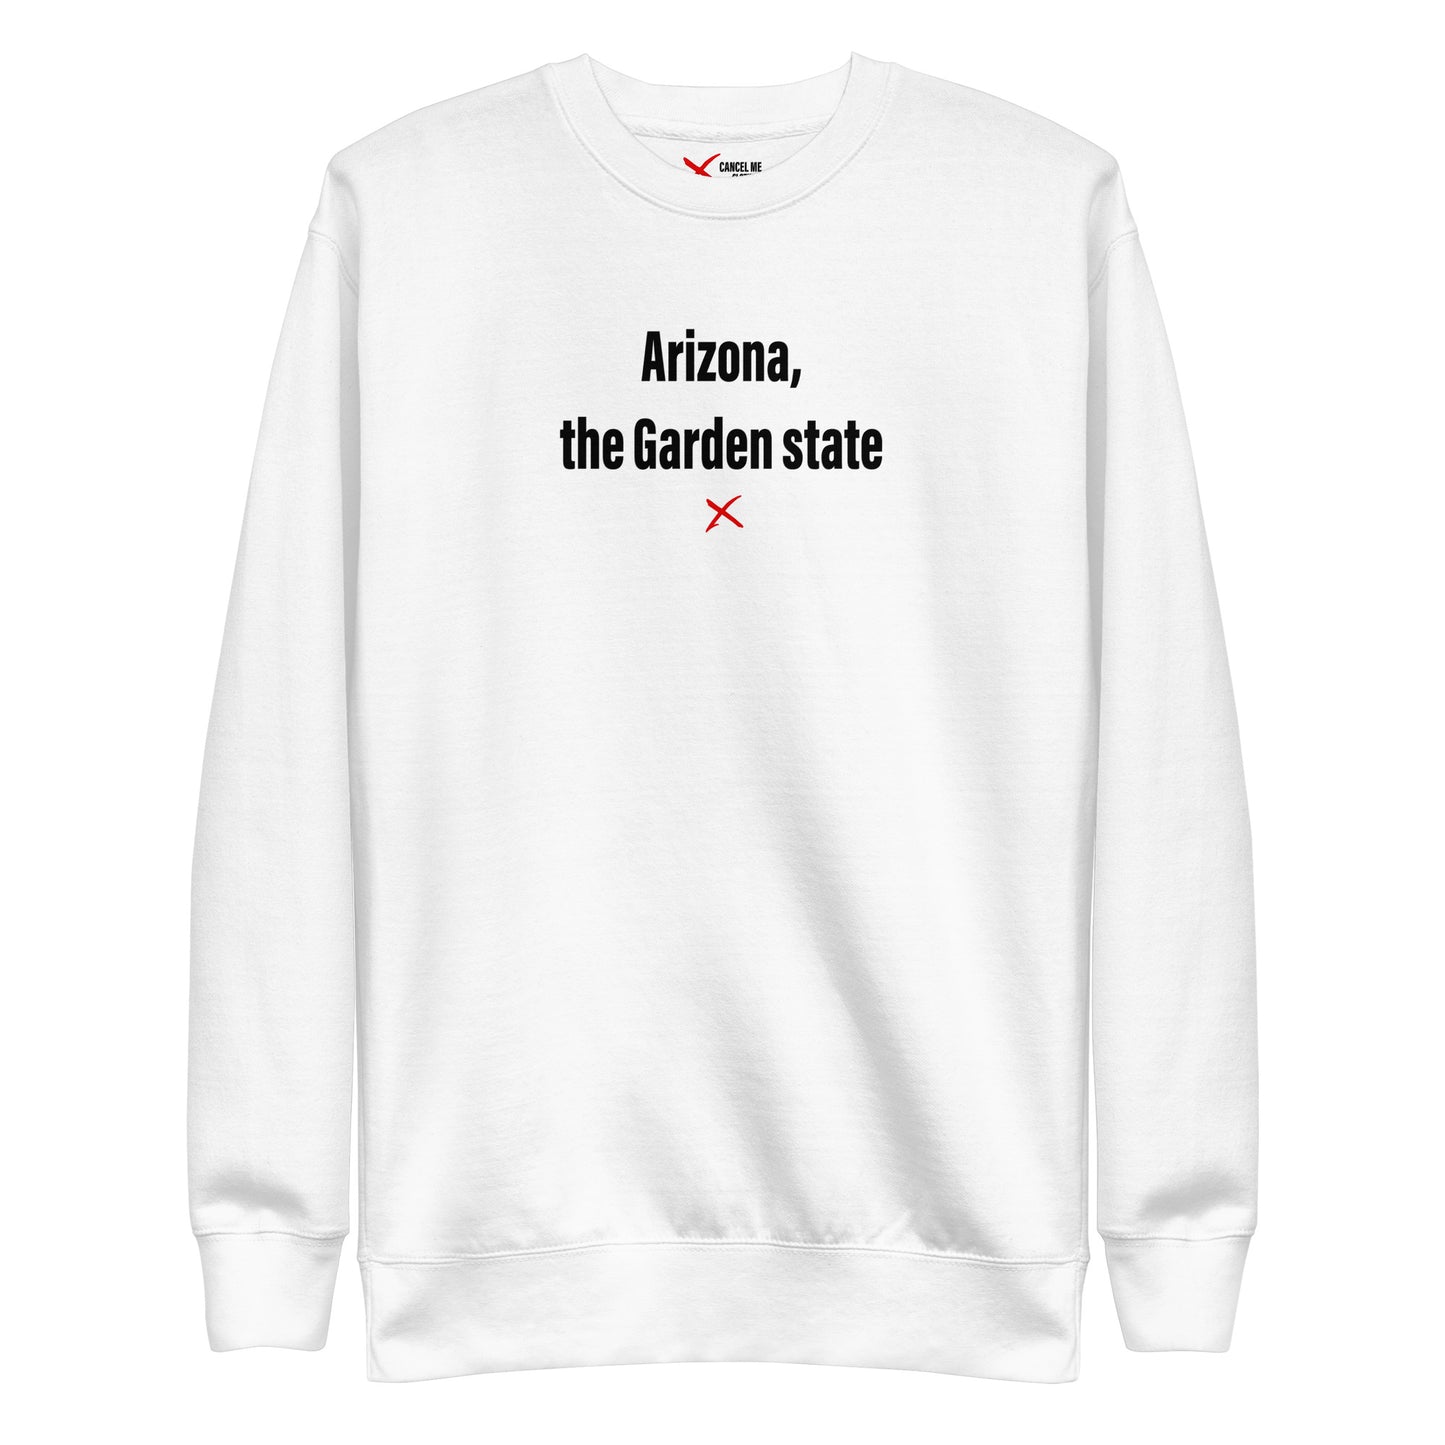 Arizona, the Garden state - Sweatshirt